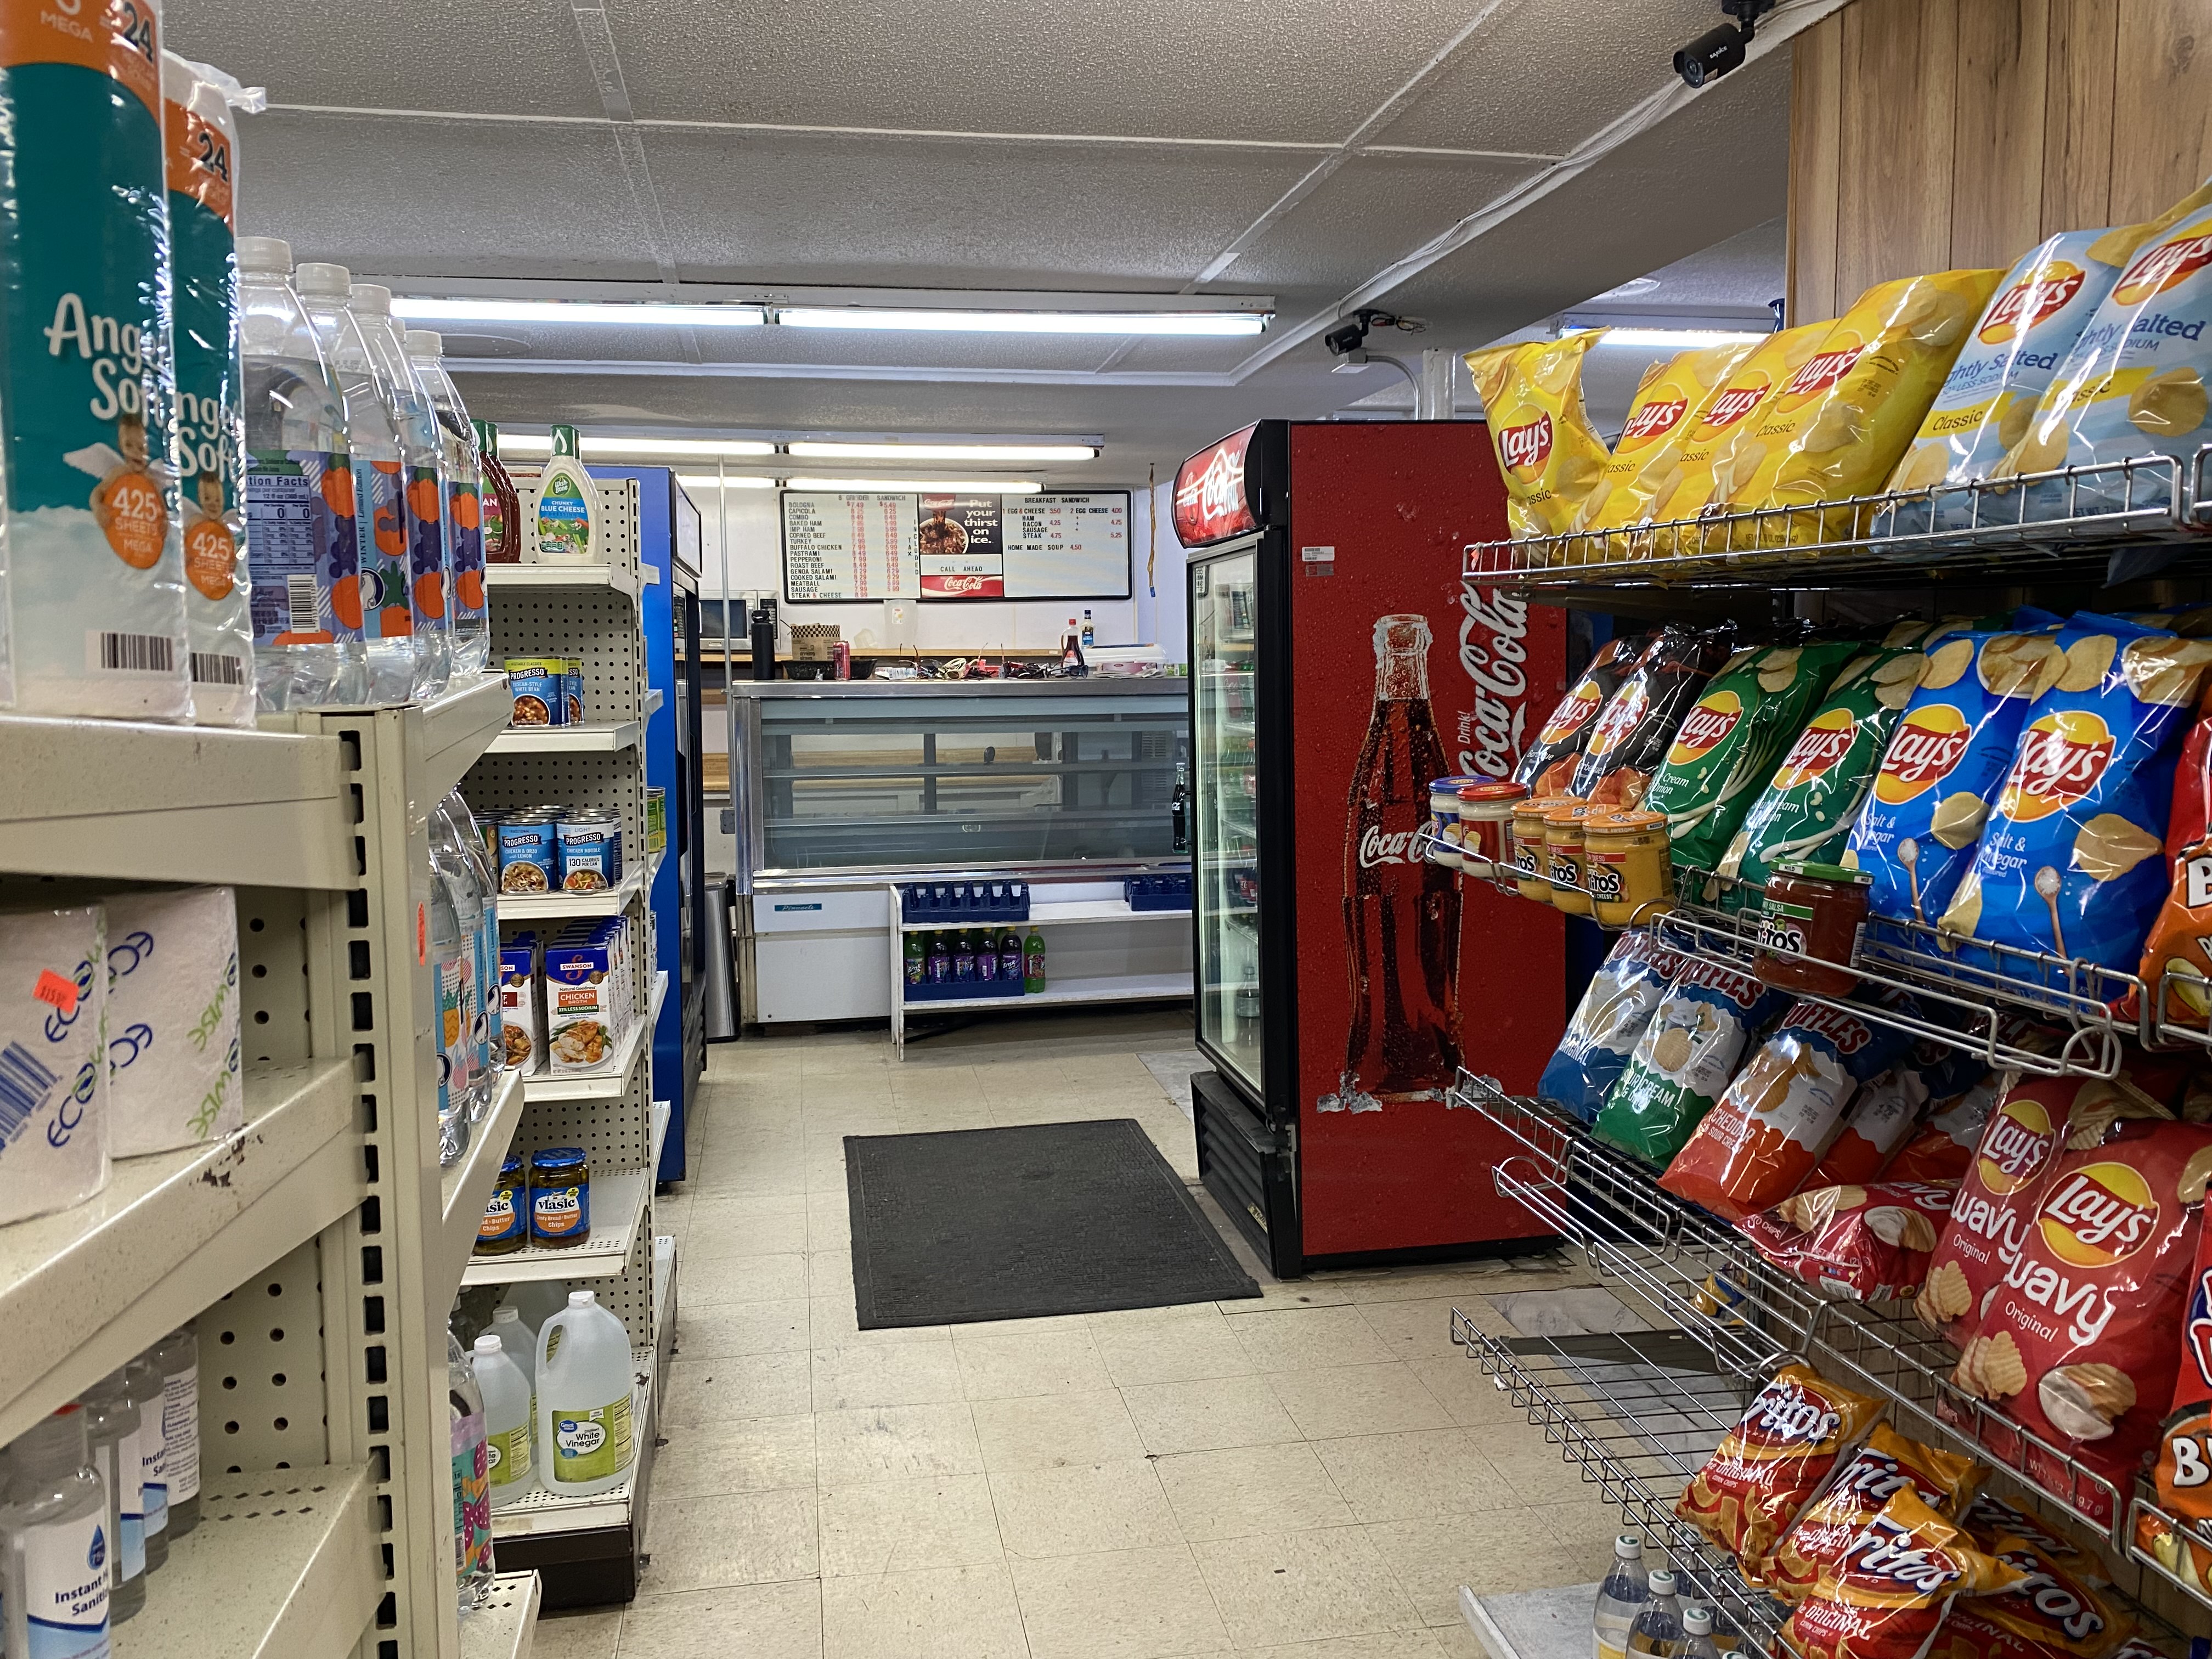 Deli Convenience Market for sale in Connecticut